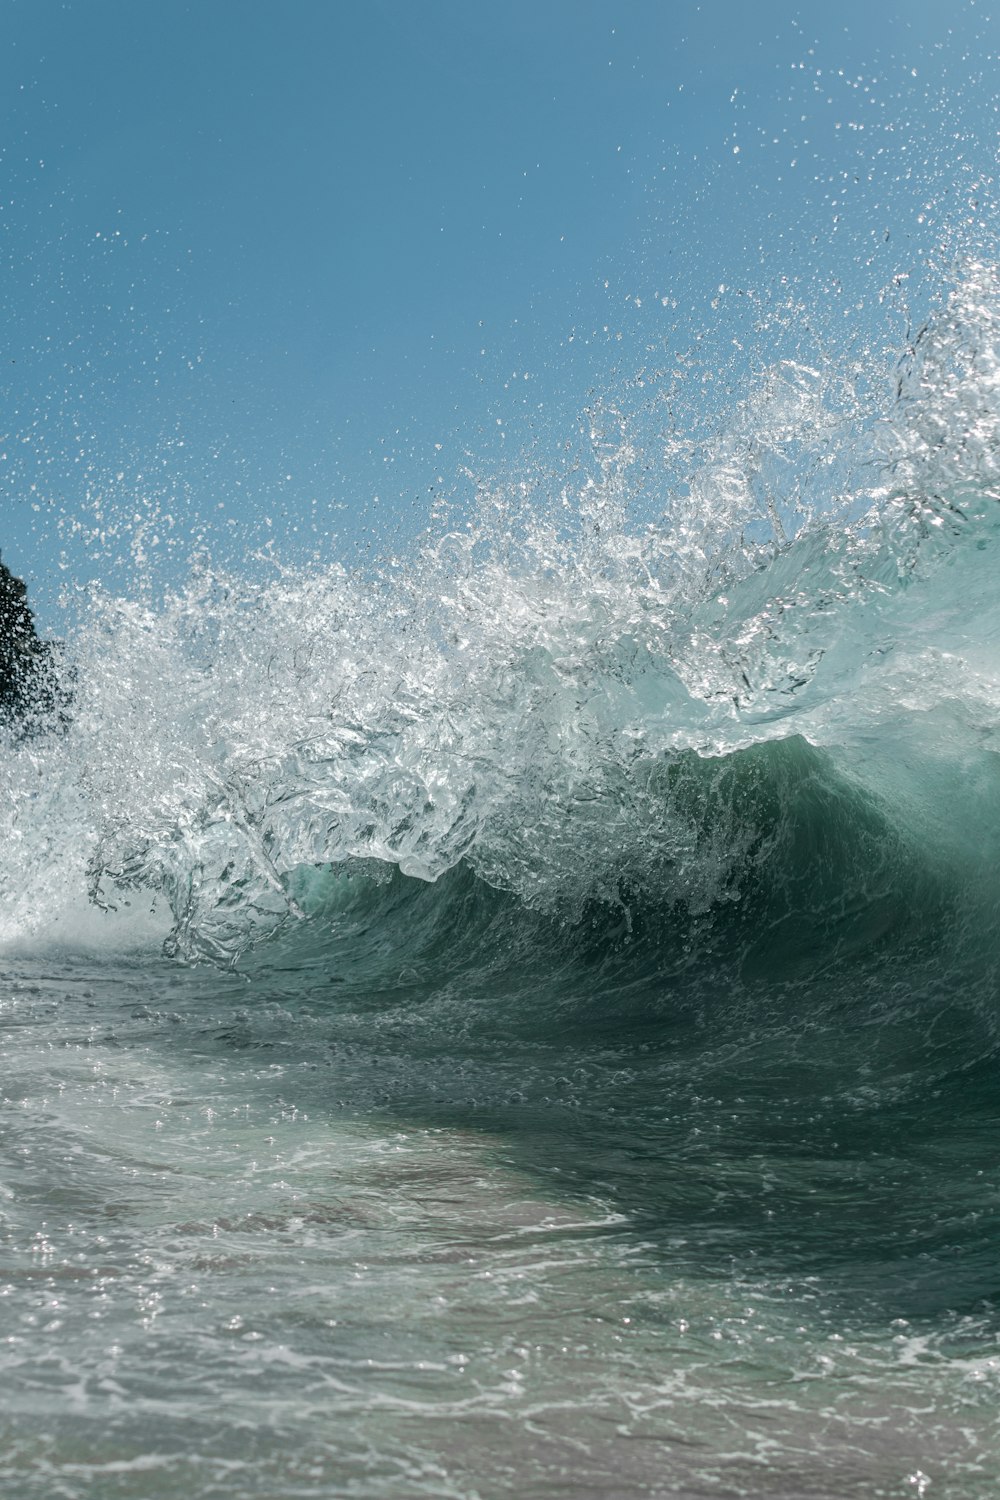 Fotografía de lapso de tiempo de una ola de mar salpicando